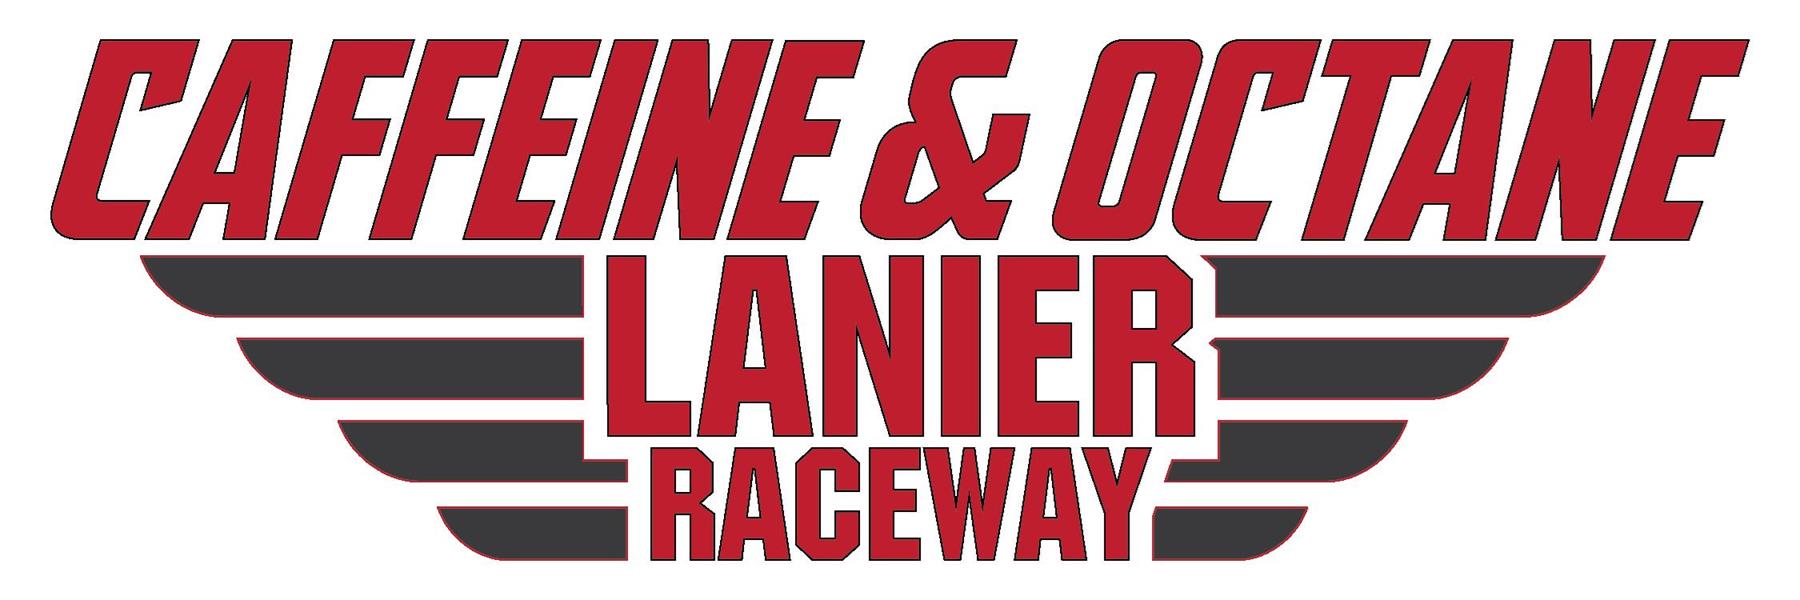 7/17/2014 - Caffeine and Octane's Lanier Raceway